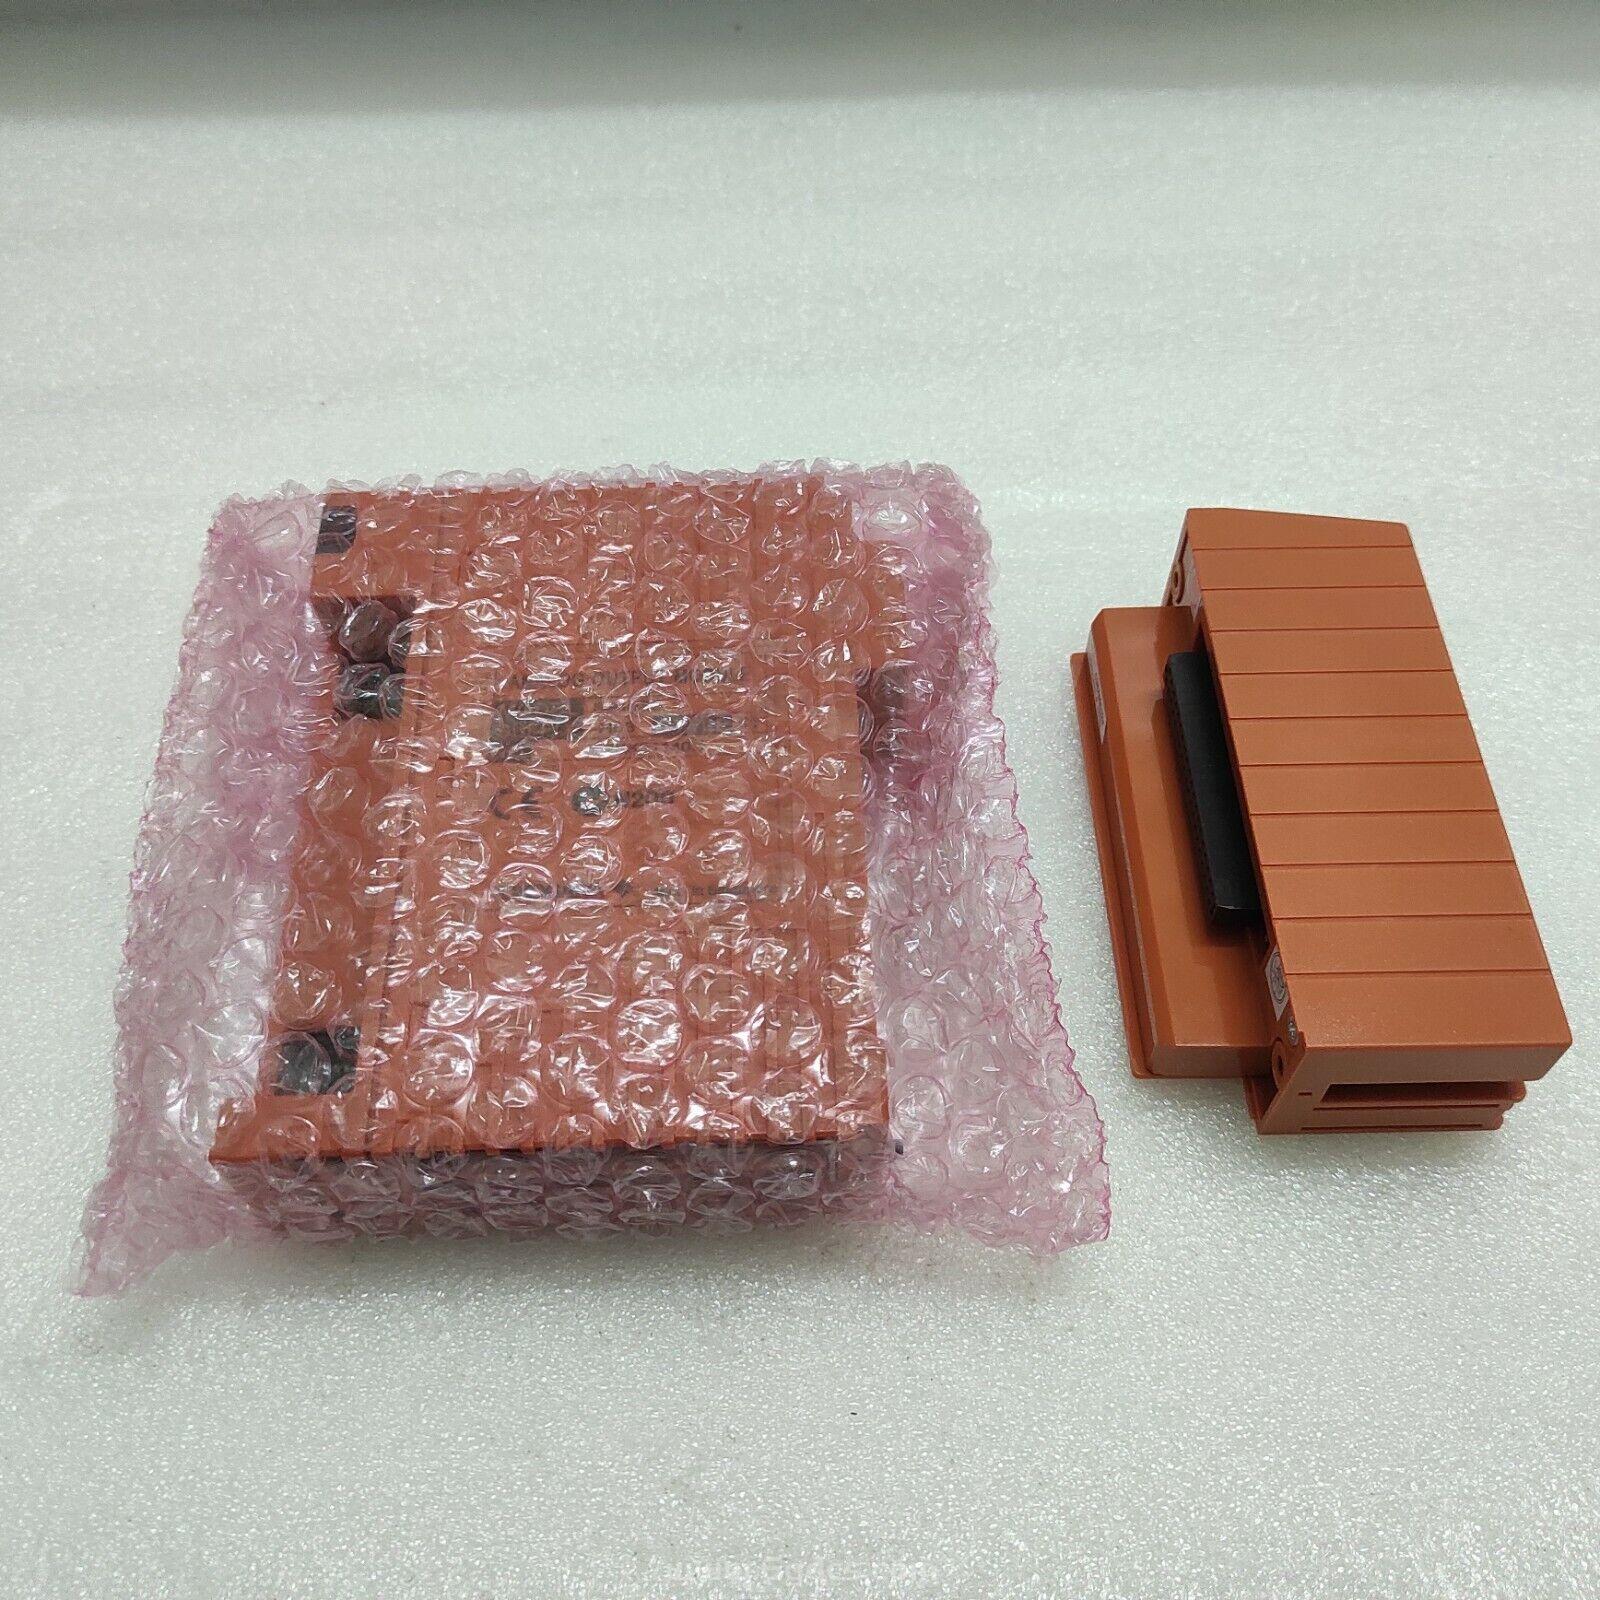 (SAI143-S33 输入模块)现货进口YOKOGAWA 横河的模块 日本 全新原装正品供应